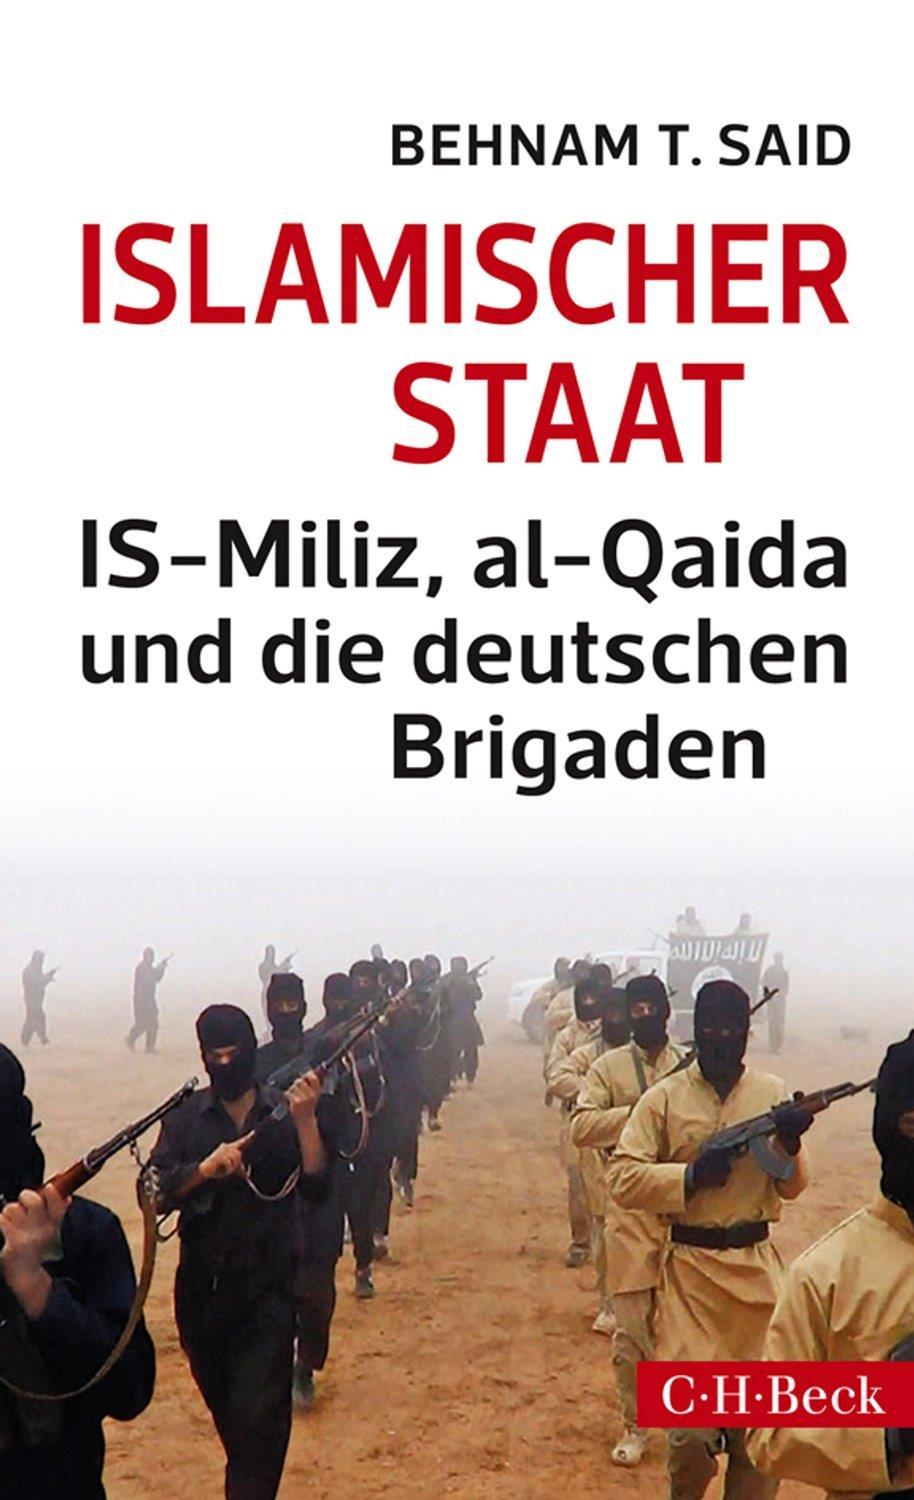 Islamischer Staat : IS-Miliz, al-qaida und die deutschen Brigaden. Von Behnam T. Said. München, 2014.